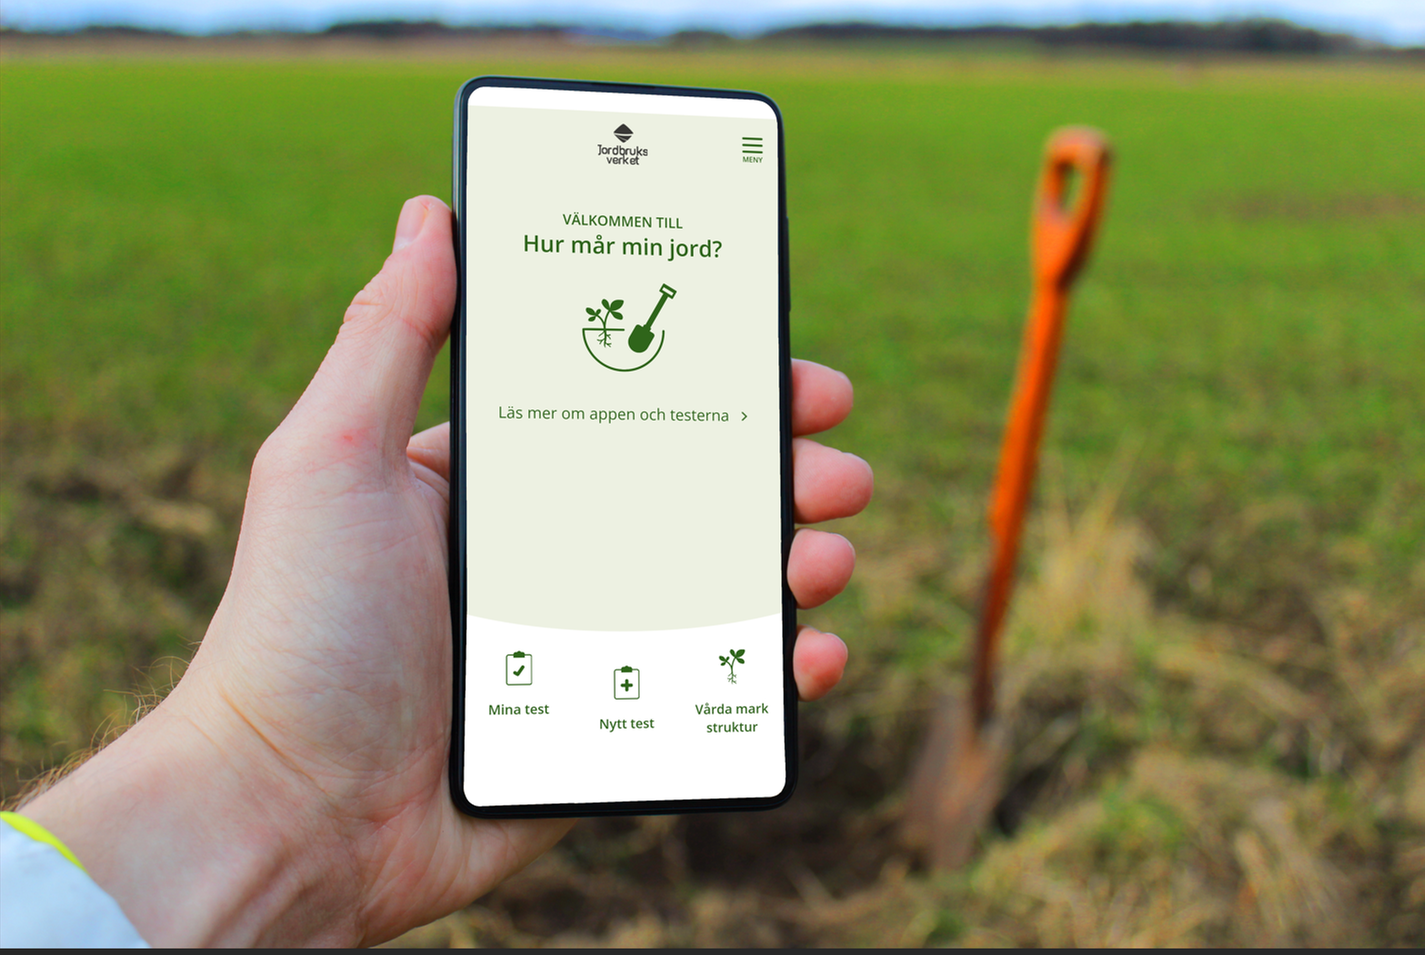 En hand som håller en mobil med appen Hur mår min jord. Fält och spade i bakgrunden.